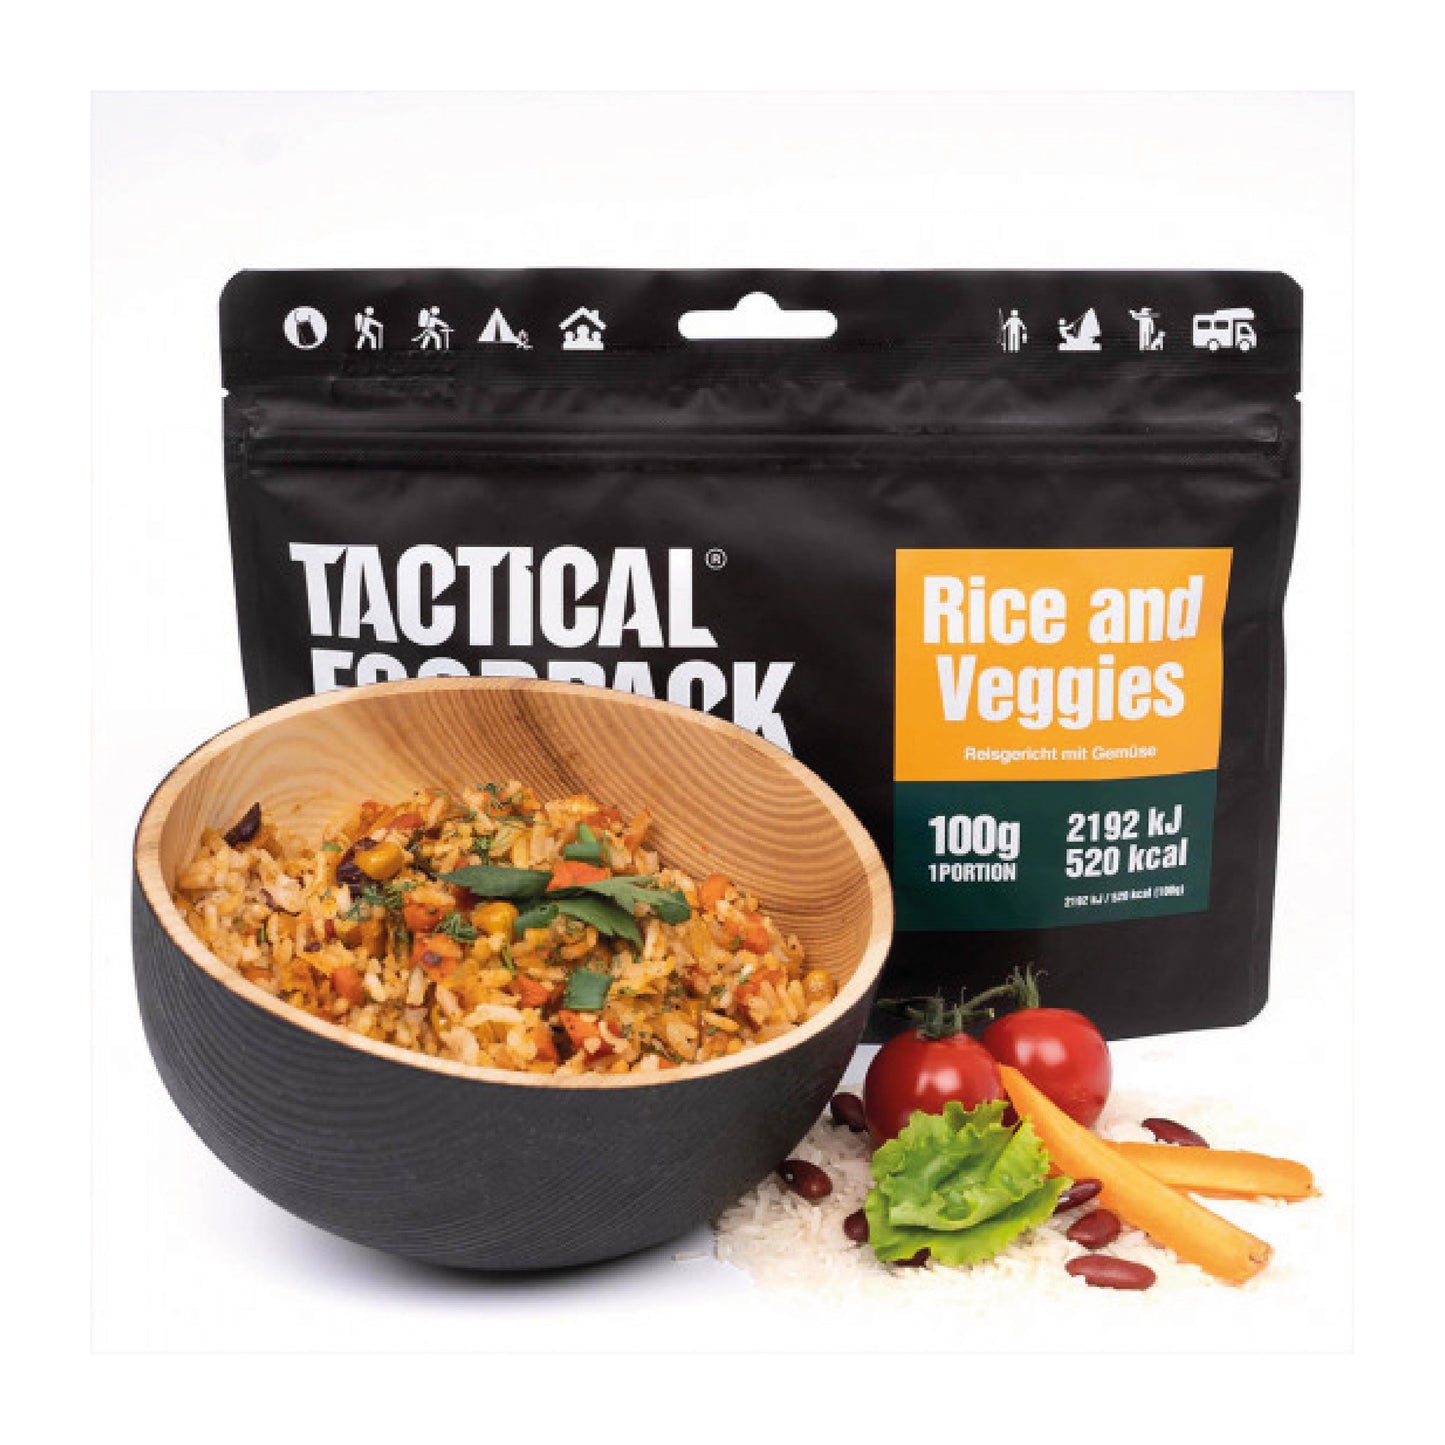 TACTICAL FOODPACK® Reisgericht mit Gemüse 100g